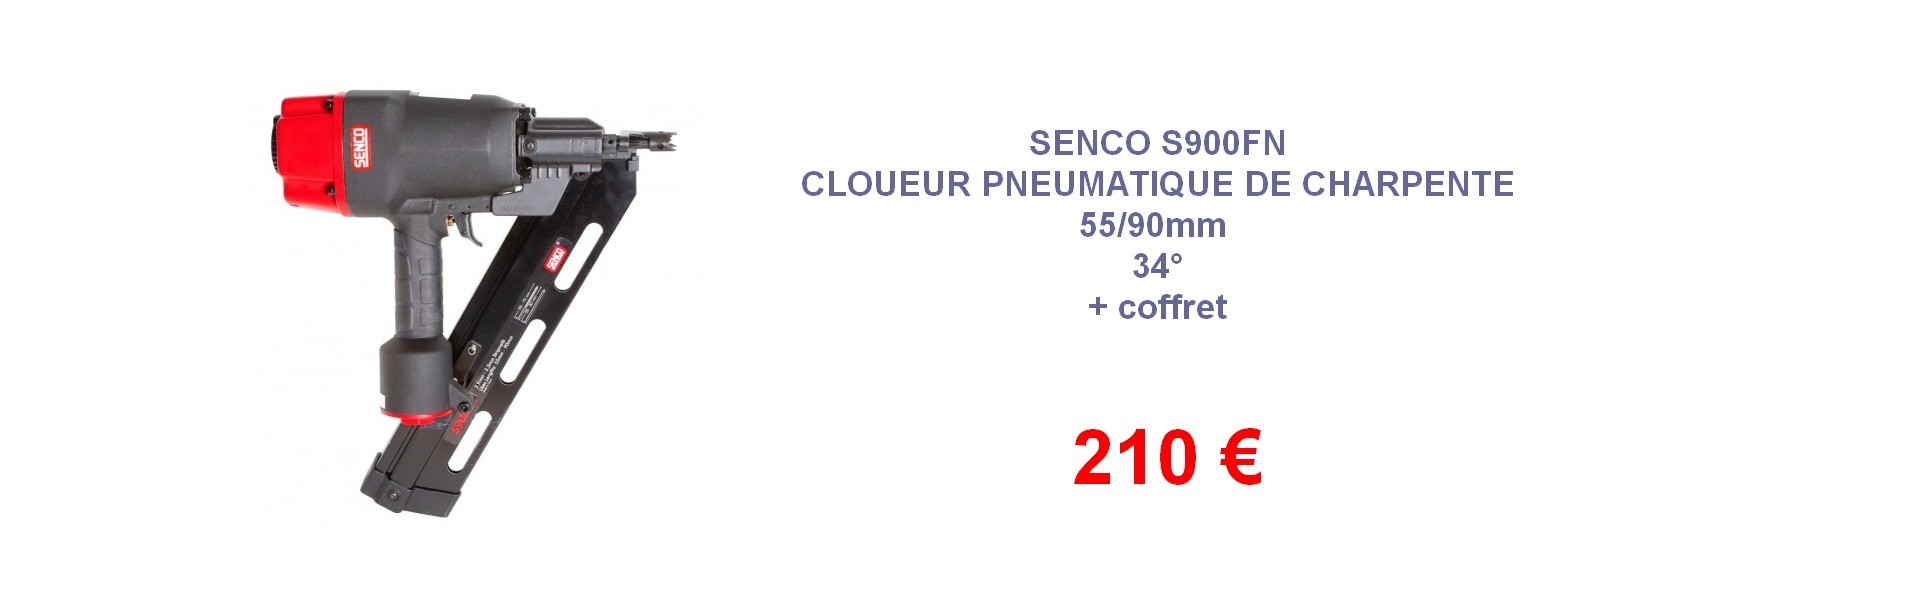 Senco S900 FN